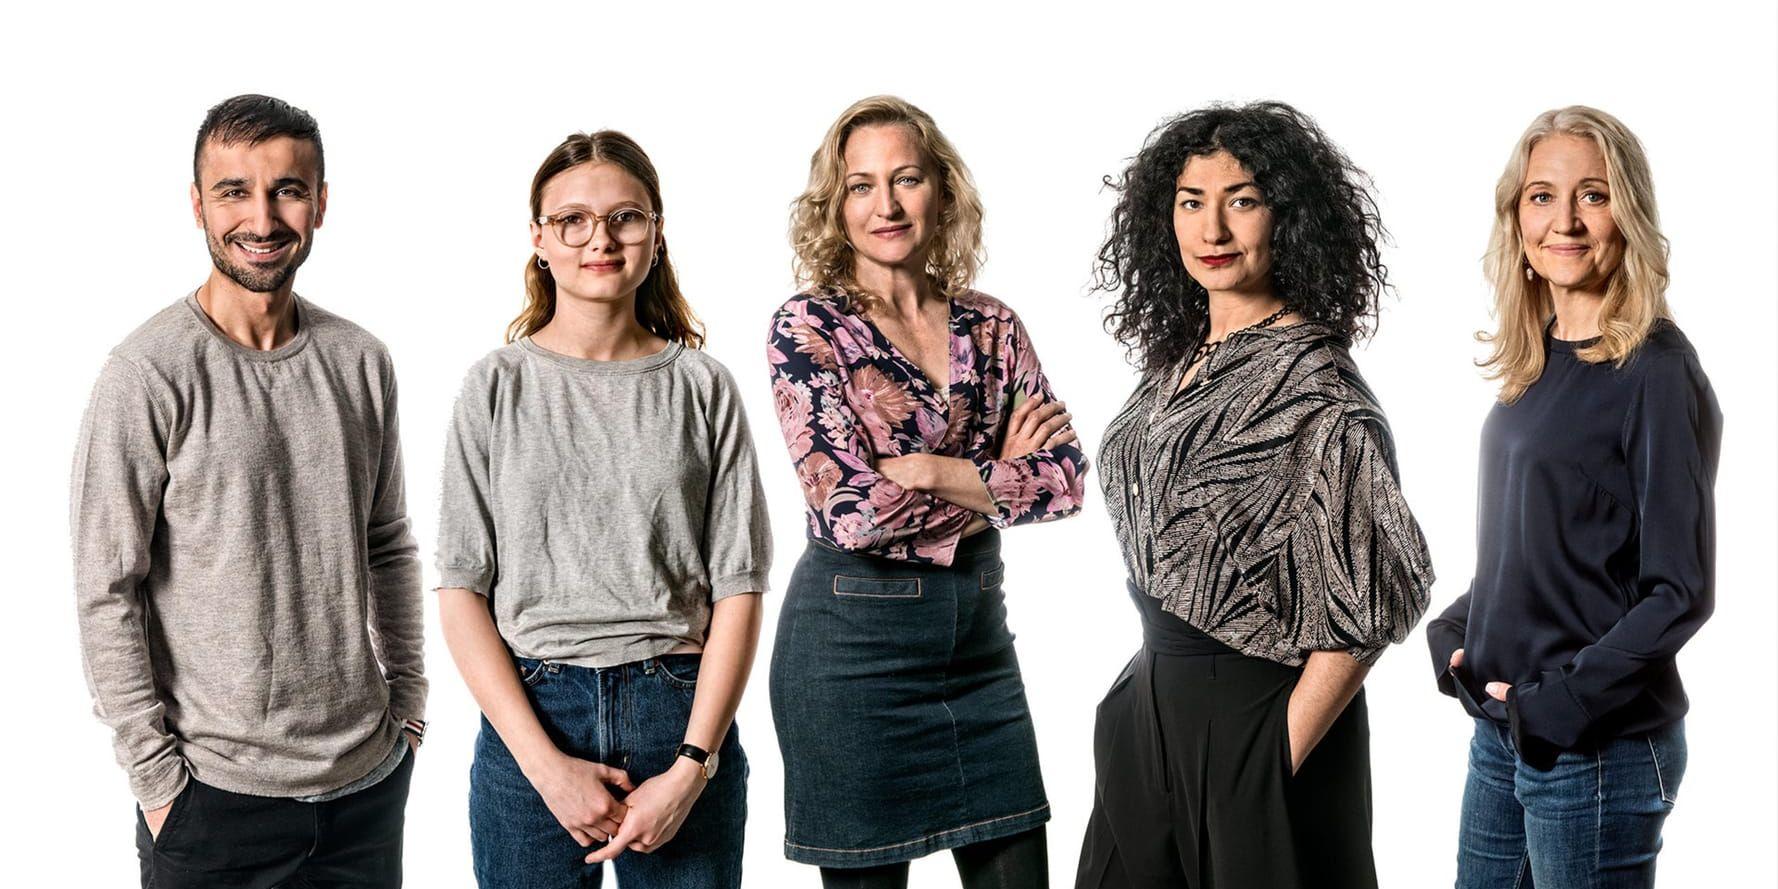 Peshang Rad, Nova Waldfogel, Maria Sundbom, Bahareh Razekh Ahmadi och Klara Zimmergren i kommande SVT-serien "Dejta". Pressbild.